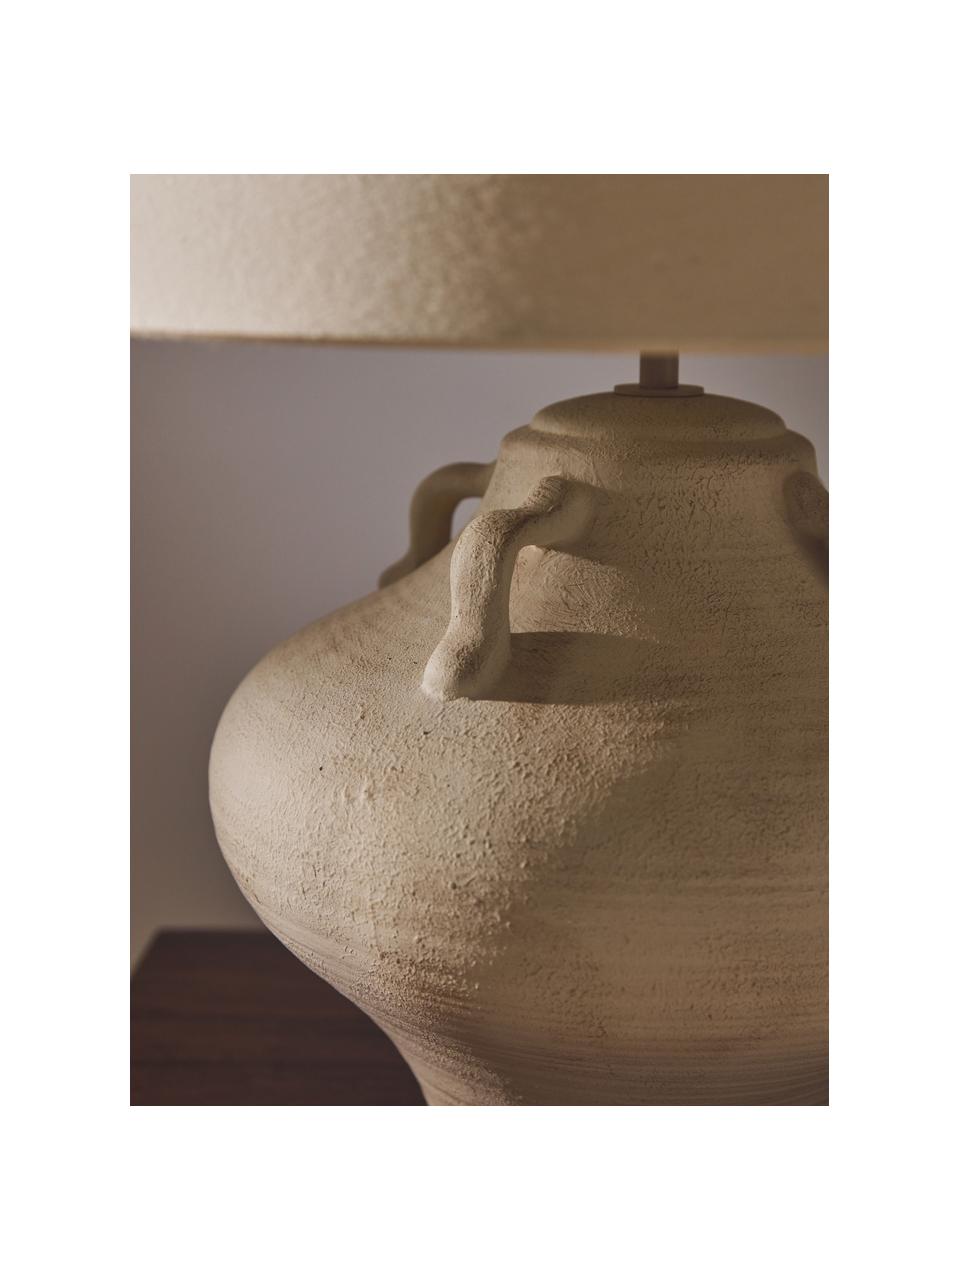 Große Keramik-Tischlampe Taytum, Lampenschirm: Leinen, Off White, Hellbeige, Ø 46 x H 51 cm